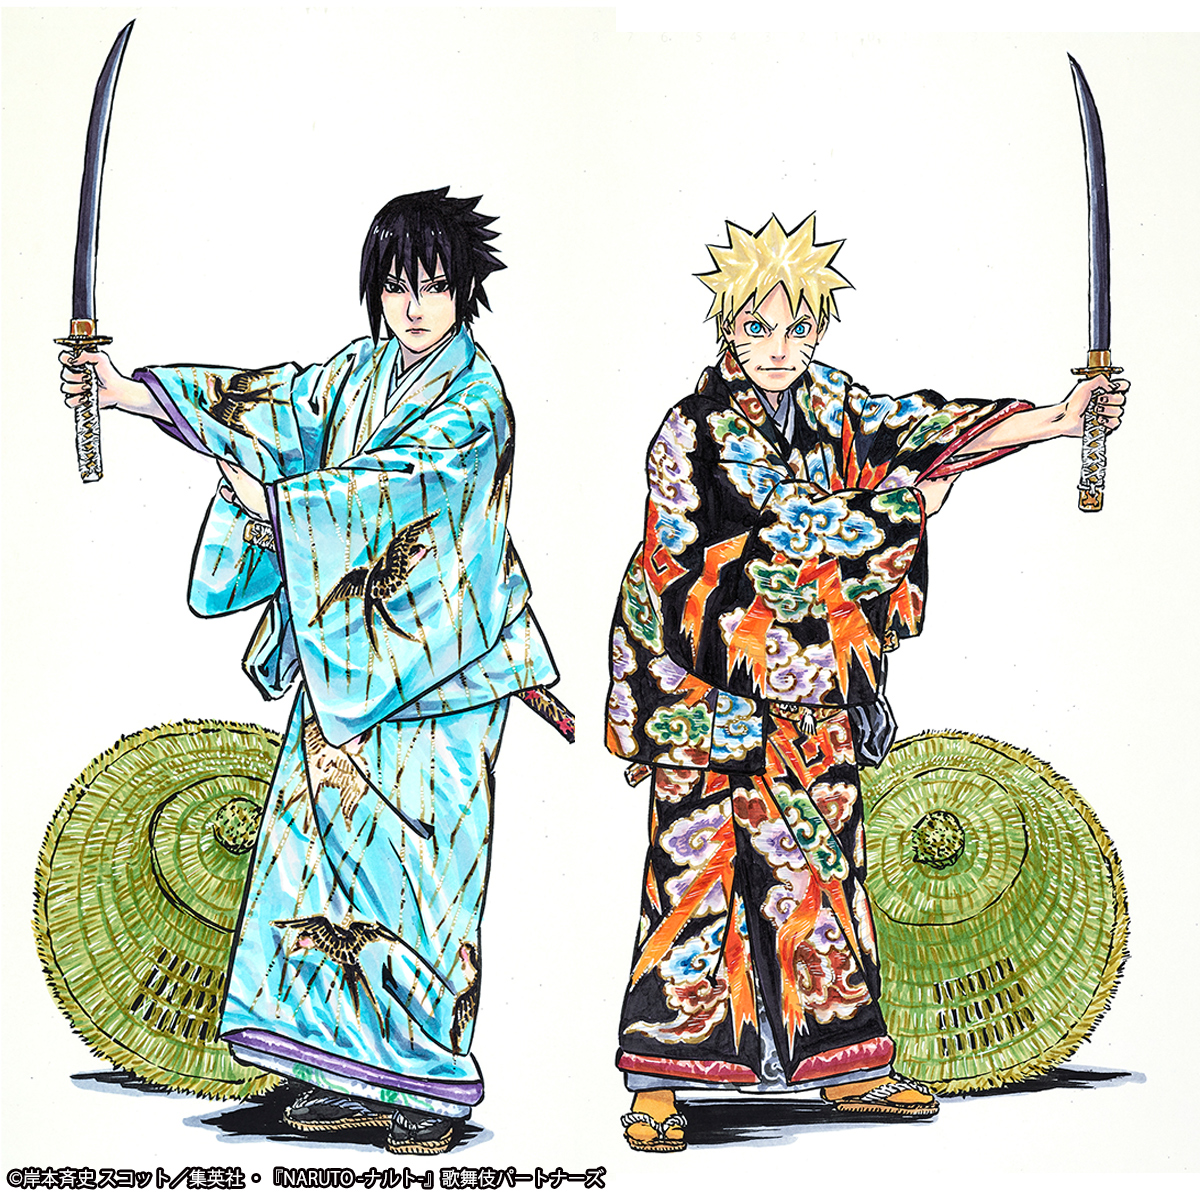 新作歌舞伎 Naruto ナルト 上演記念 岸本斉史描き下ろし着物姿のナルト サスケが立体化 原作テイストの造形がポイント オタ女